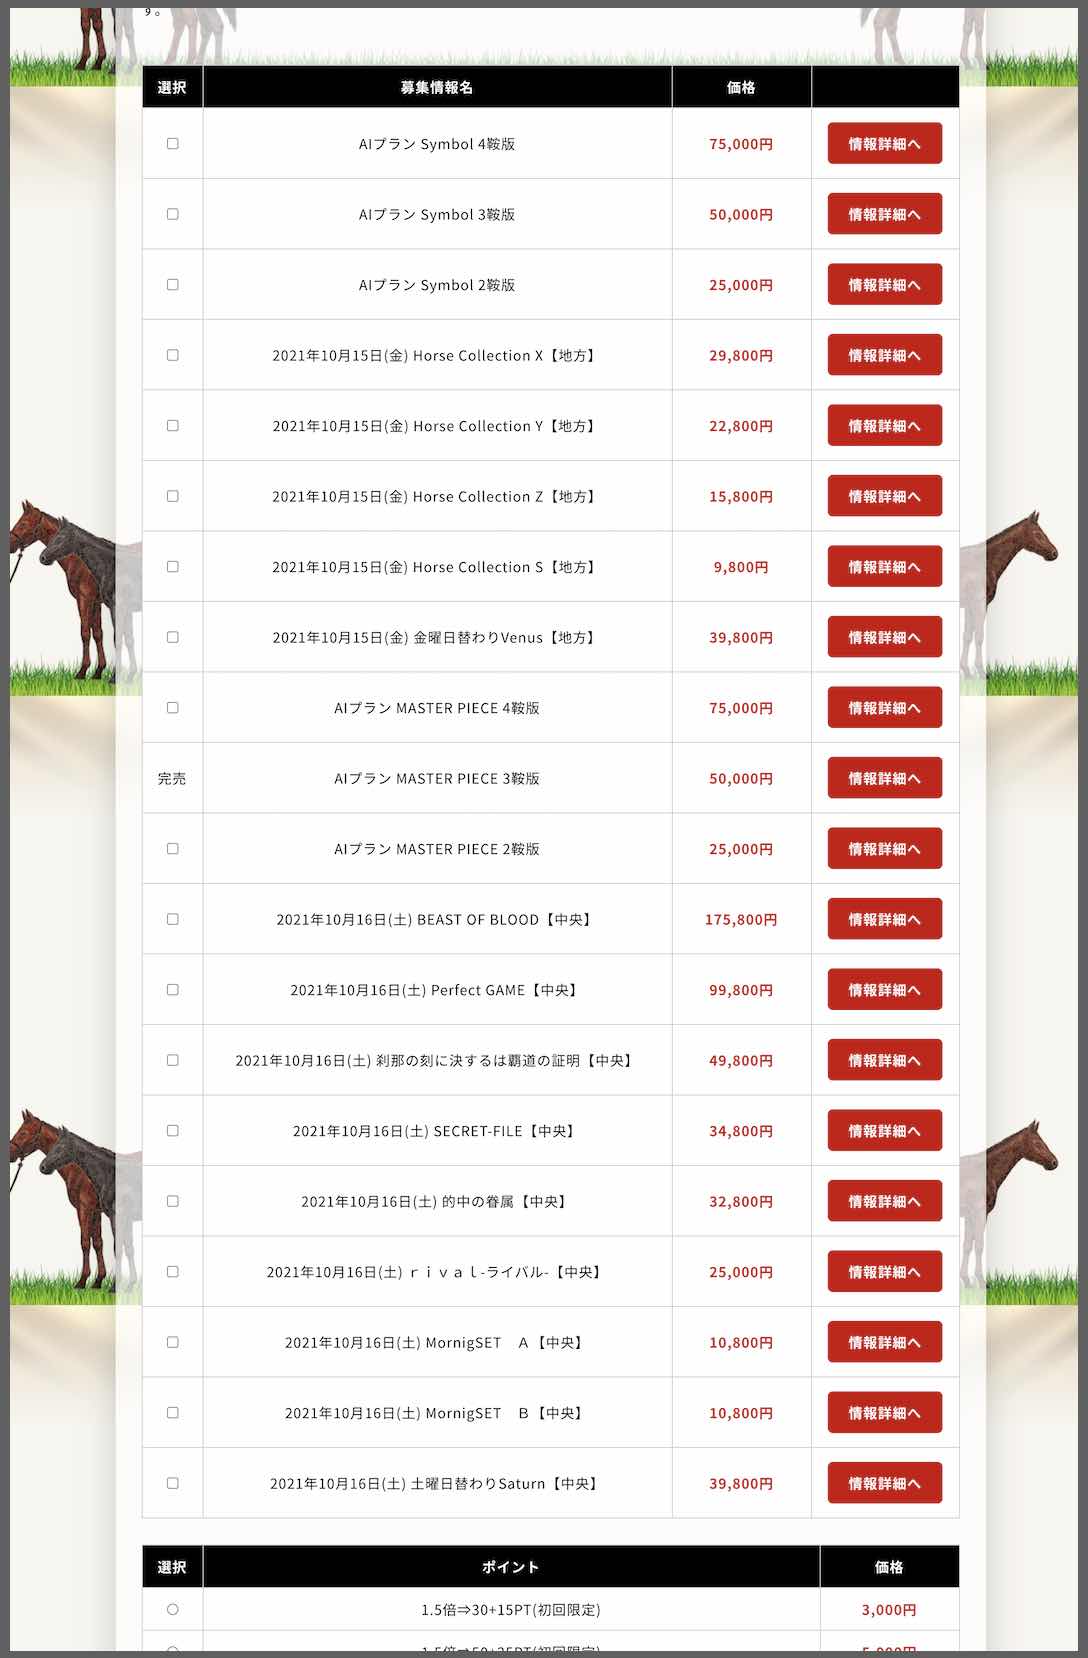 馬券コレクションという競馬予想サイトが提供する競馬予想